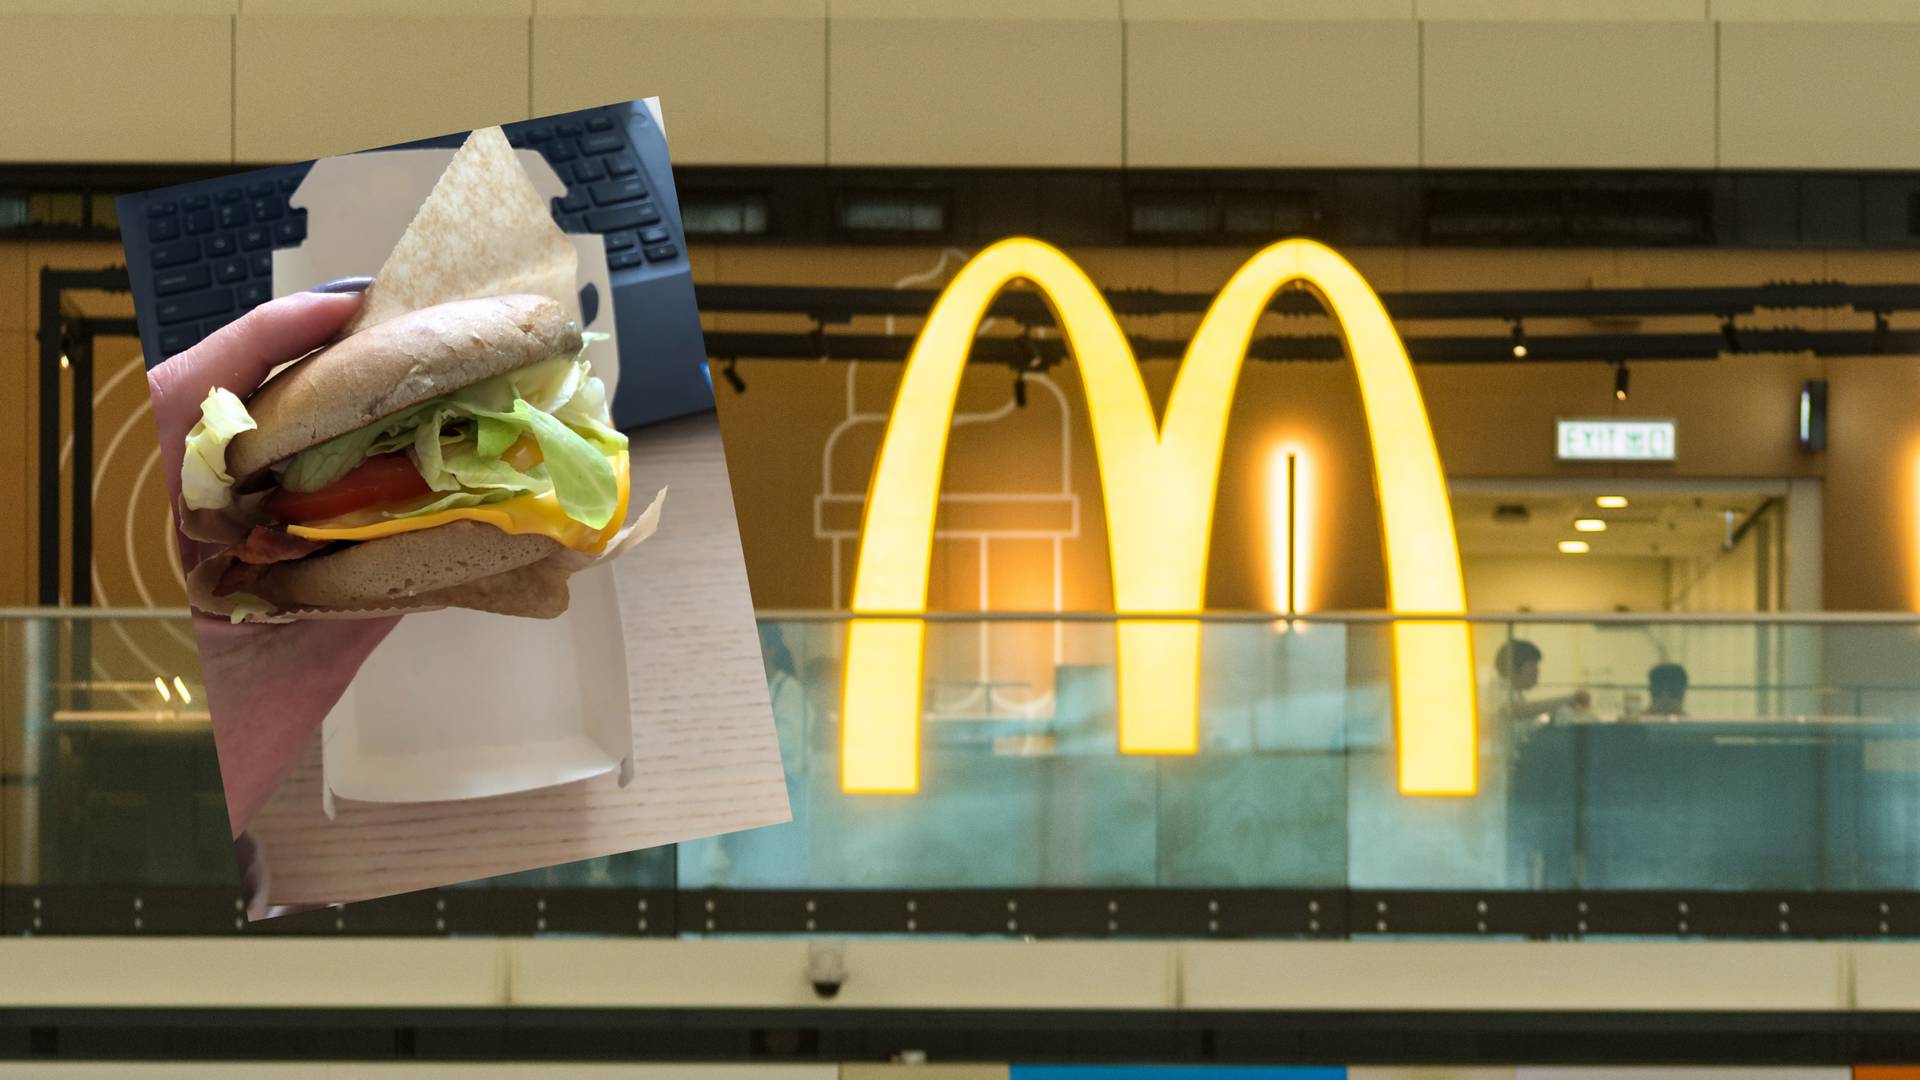 Ukraiński Burger w McDonald's już dostępny. Ile kosztuje?